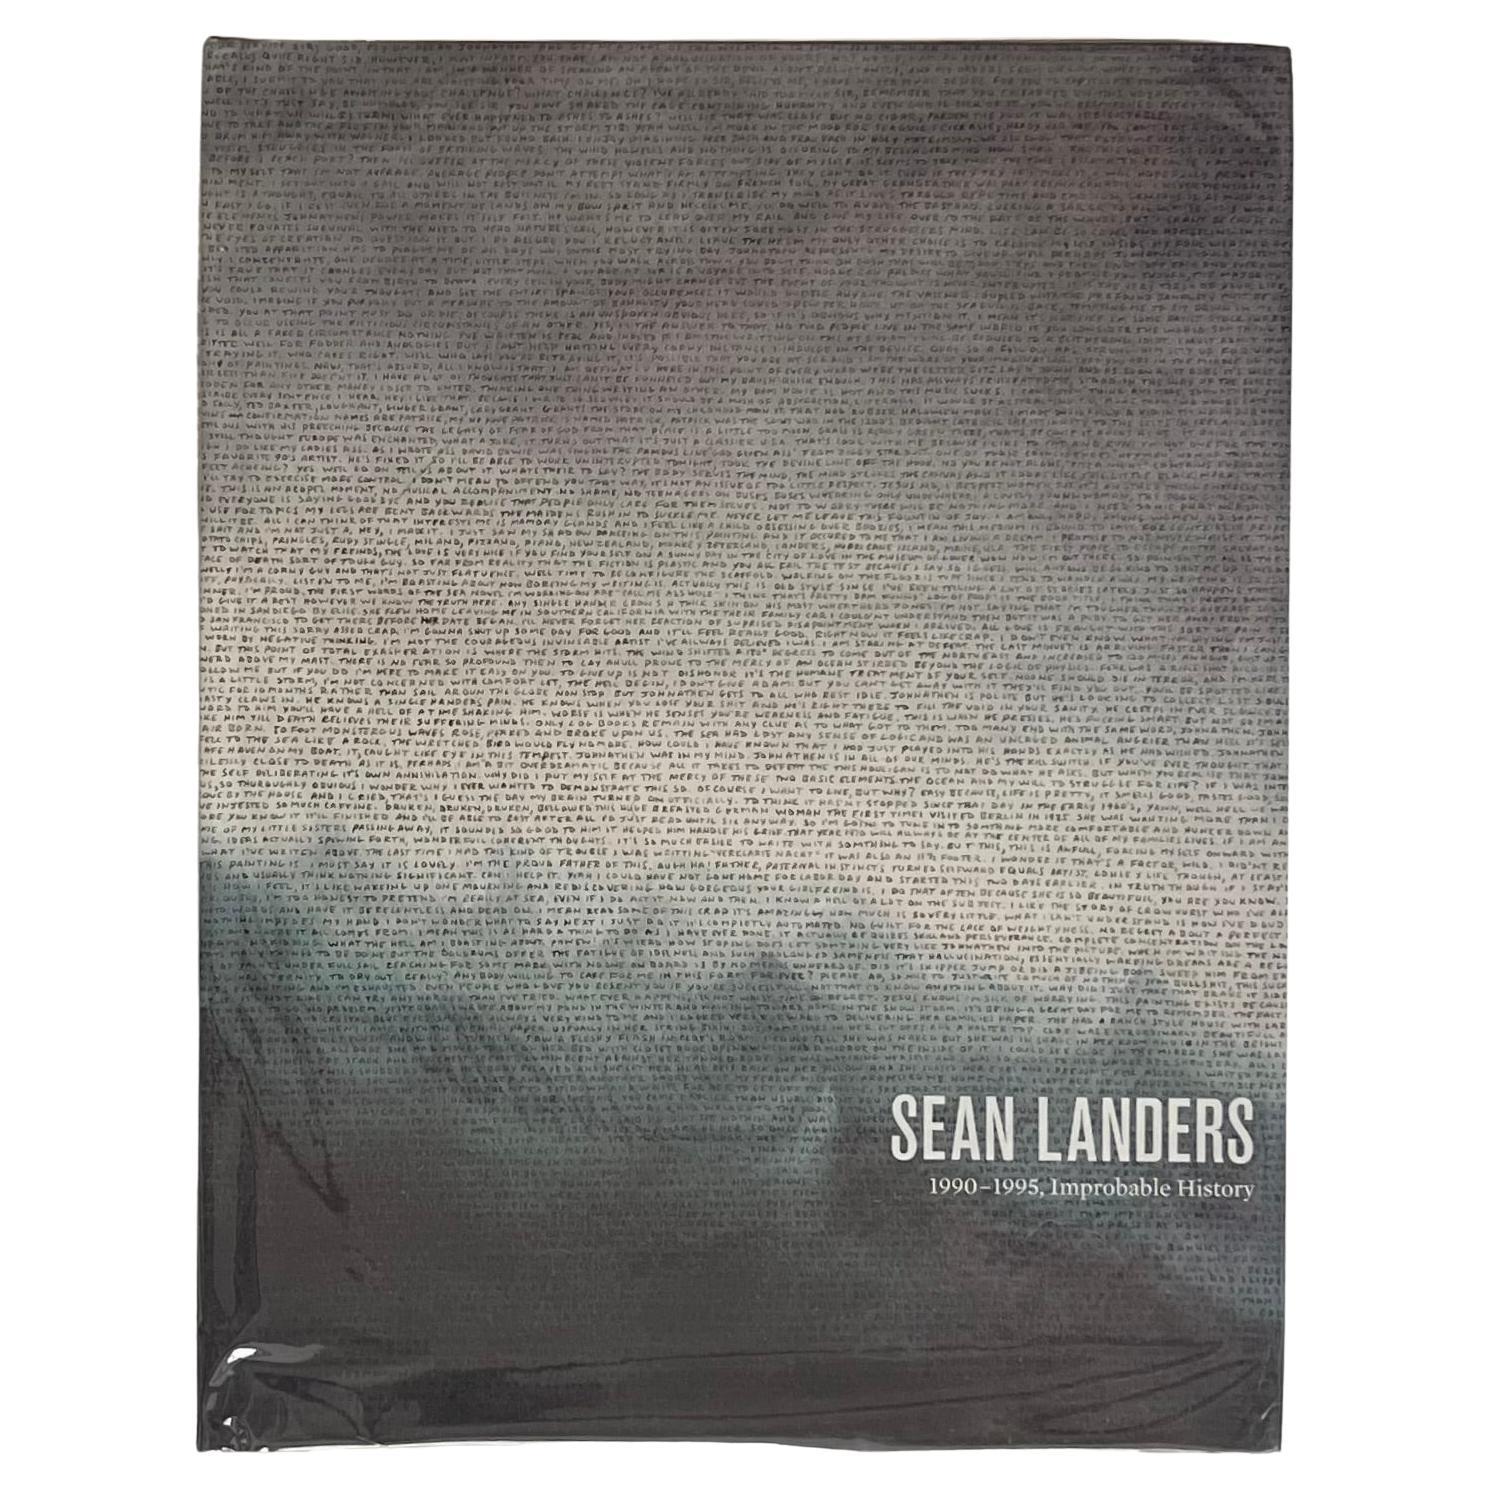 Sean Landers 1990-1995, Histoire improbable 1ère édition 2010